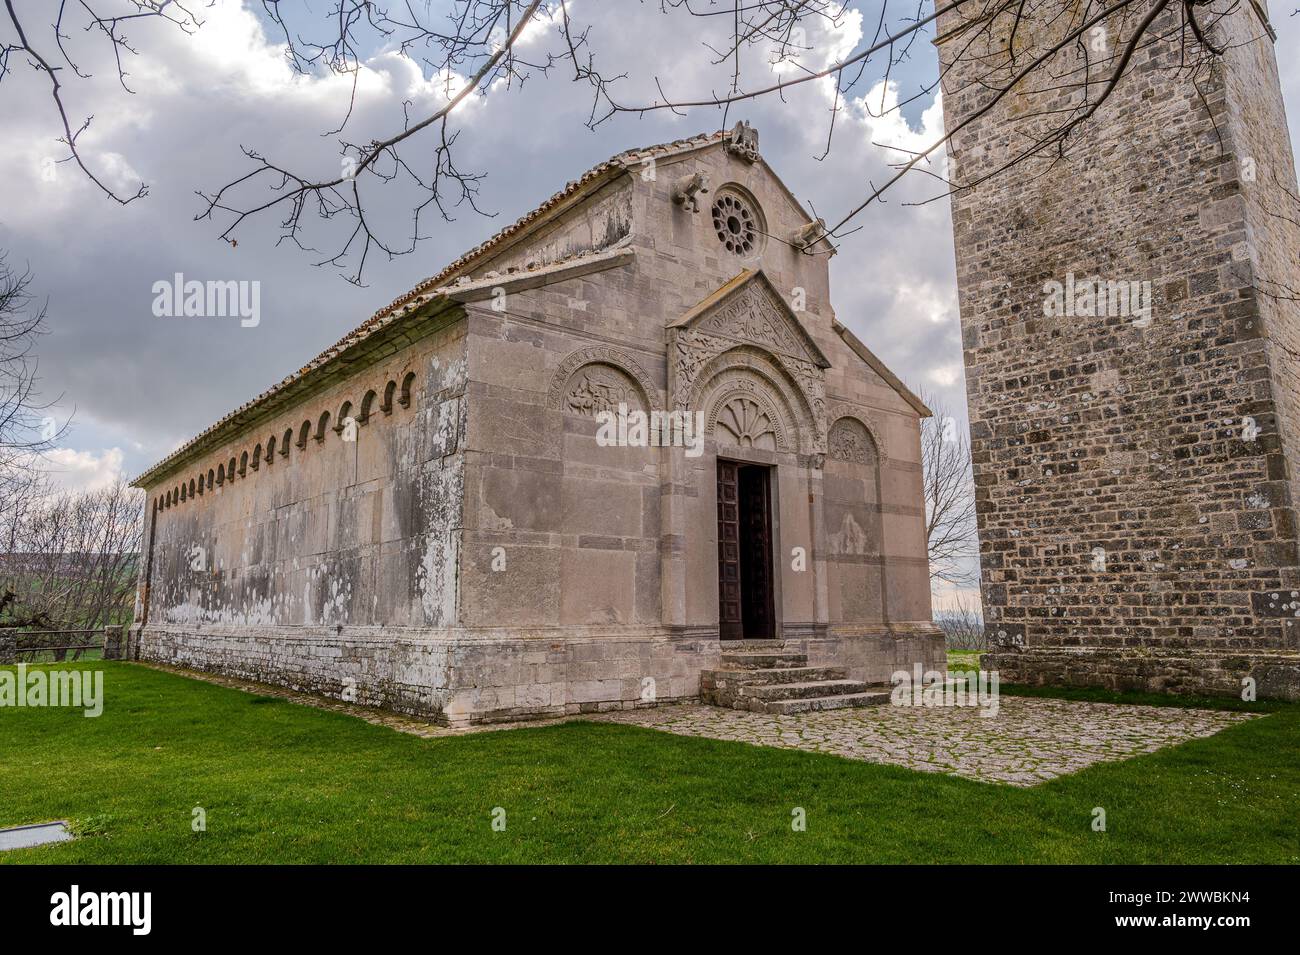 C'est une abbaye dans la municipalité de matrice, Campobasso. La date de construction de l'abbaye n'est pas connue, mais elle a été consacrée en août 1148, Banque D'Images